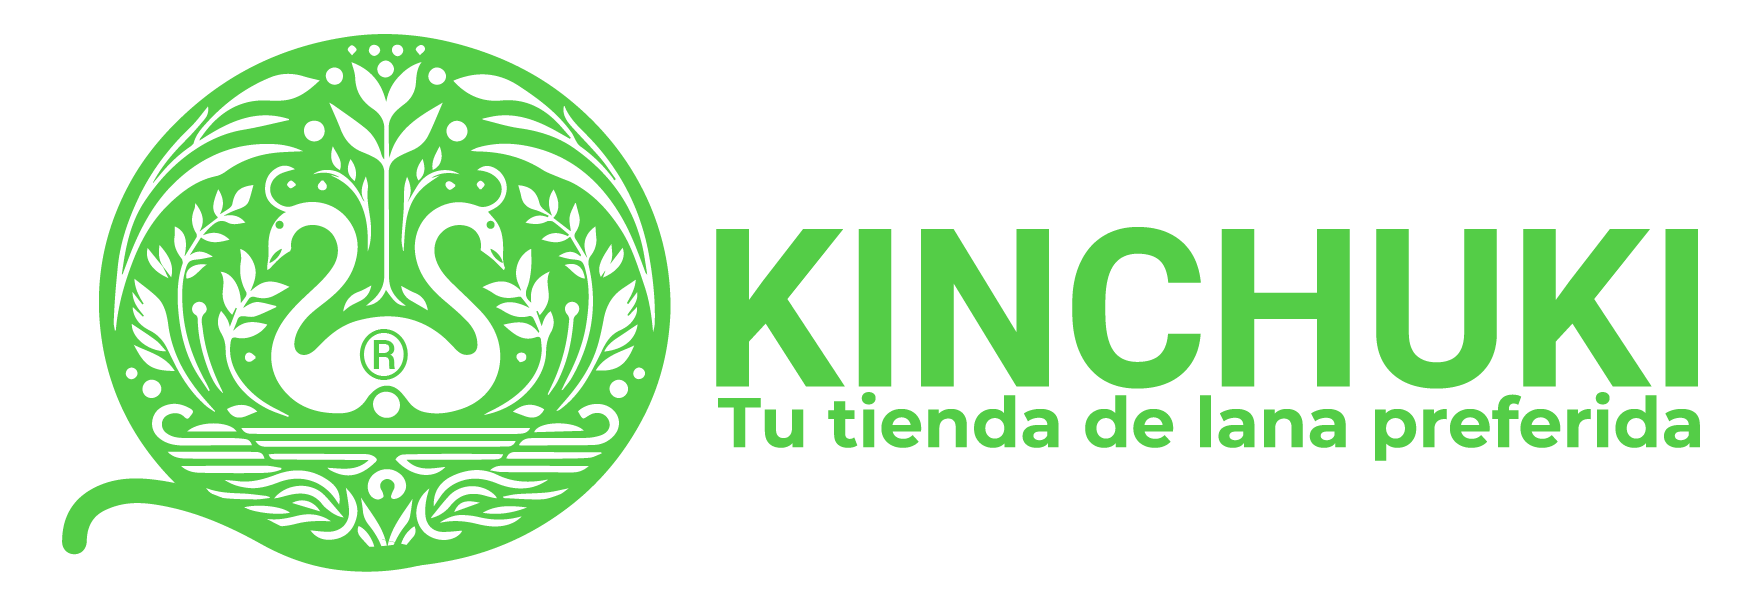 Logotipo para empresa que vende lana en Chile, icono en base a la lana se sacó formas de un cisne creado con tejidos, el nombre está a la derecha y el slogan debajo